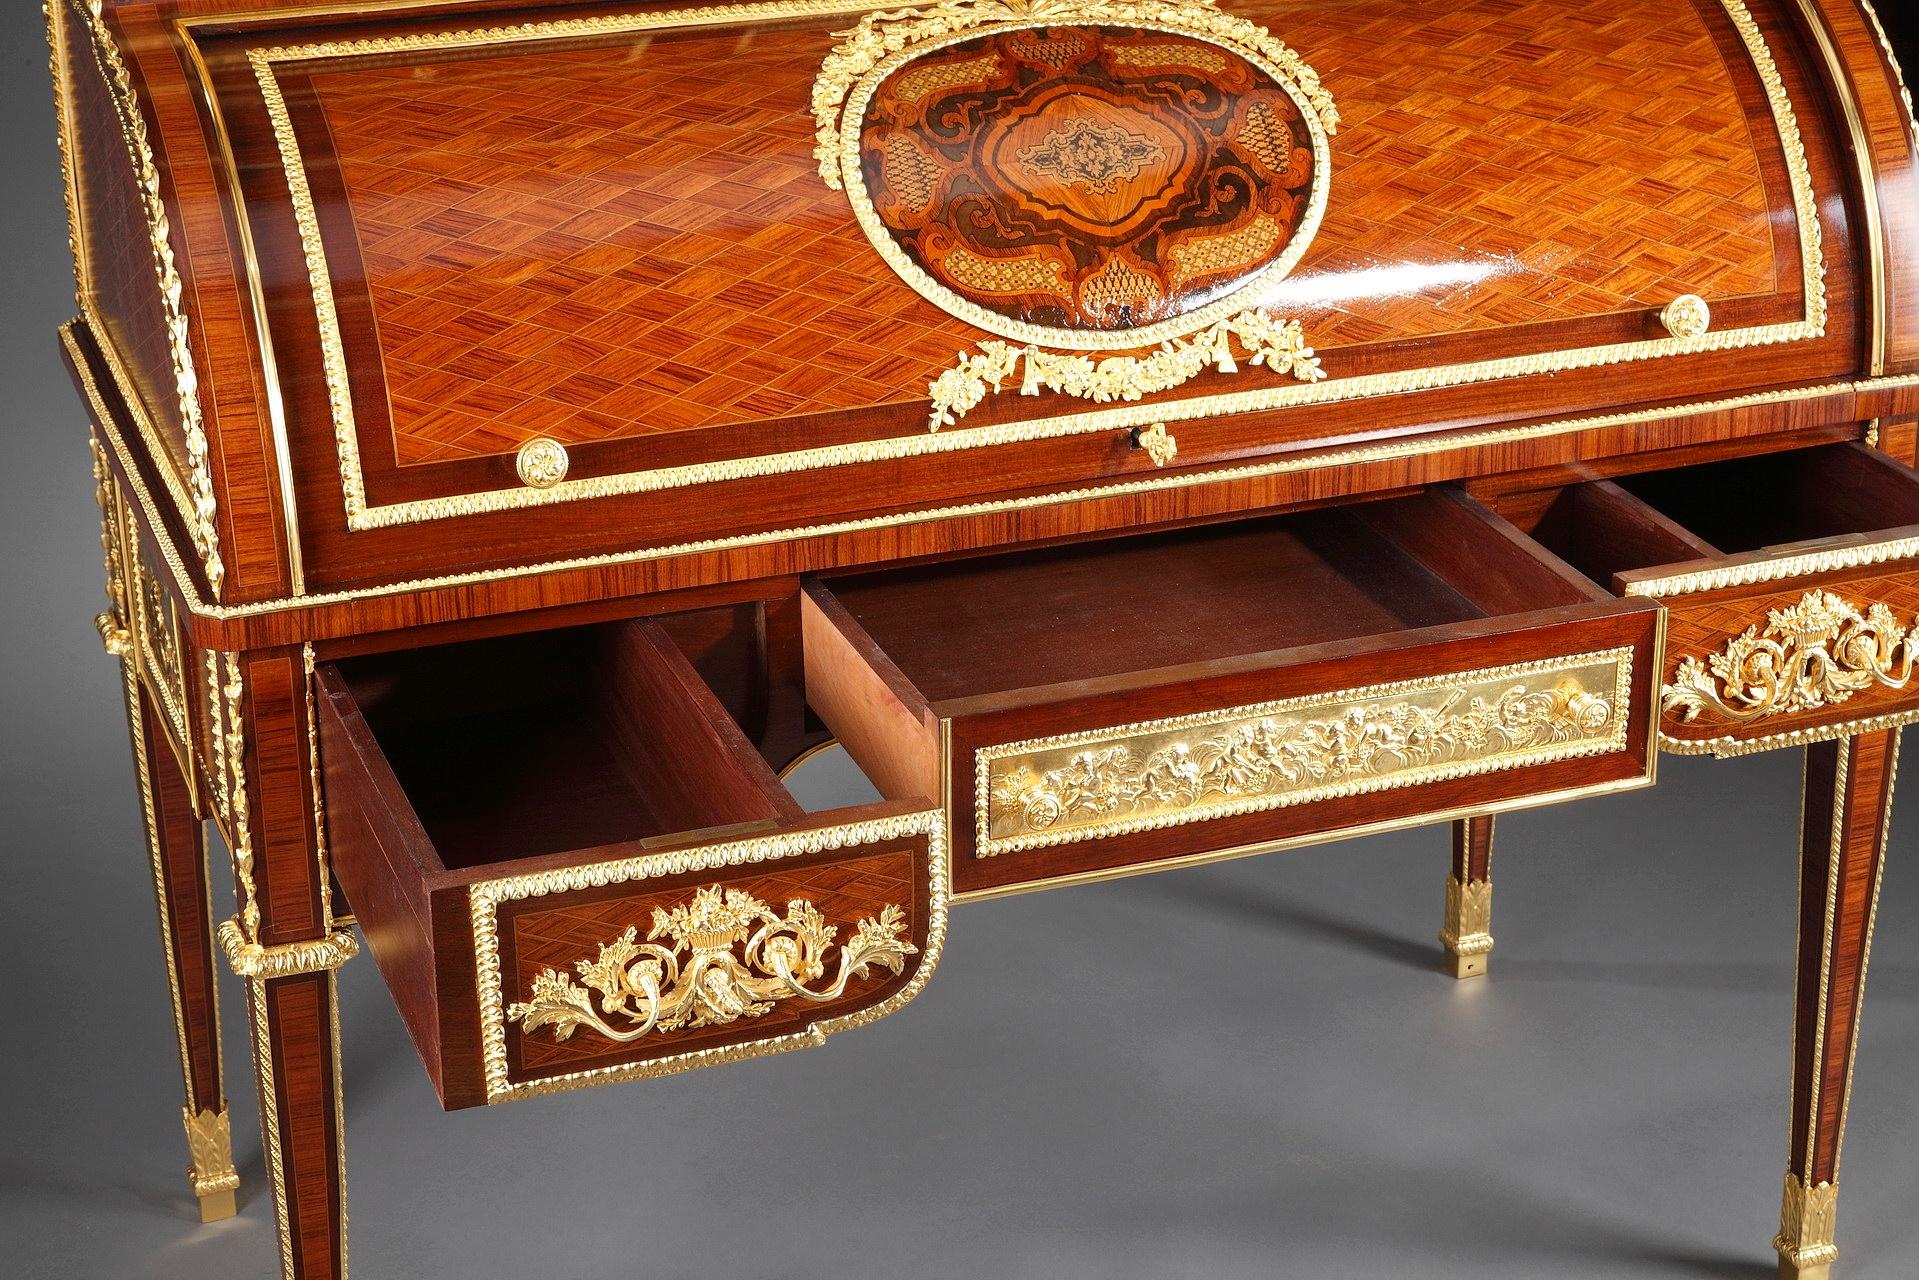 Gilt Rolltop Desk after Jean-Henri Riesener Attributed to Maison Beurdeley For Sale